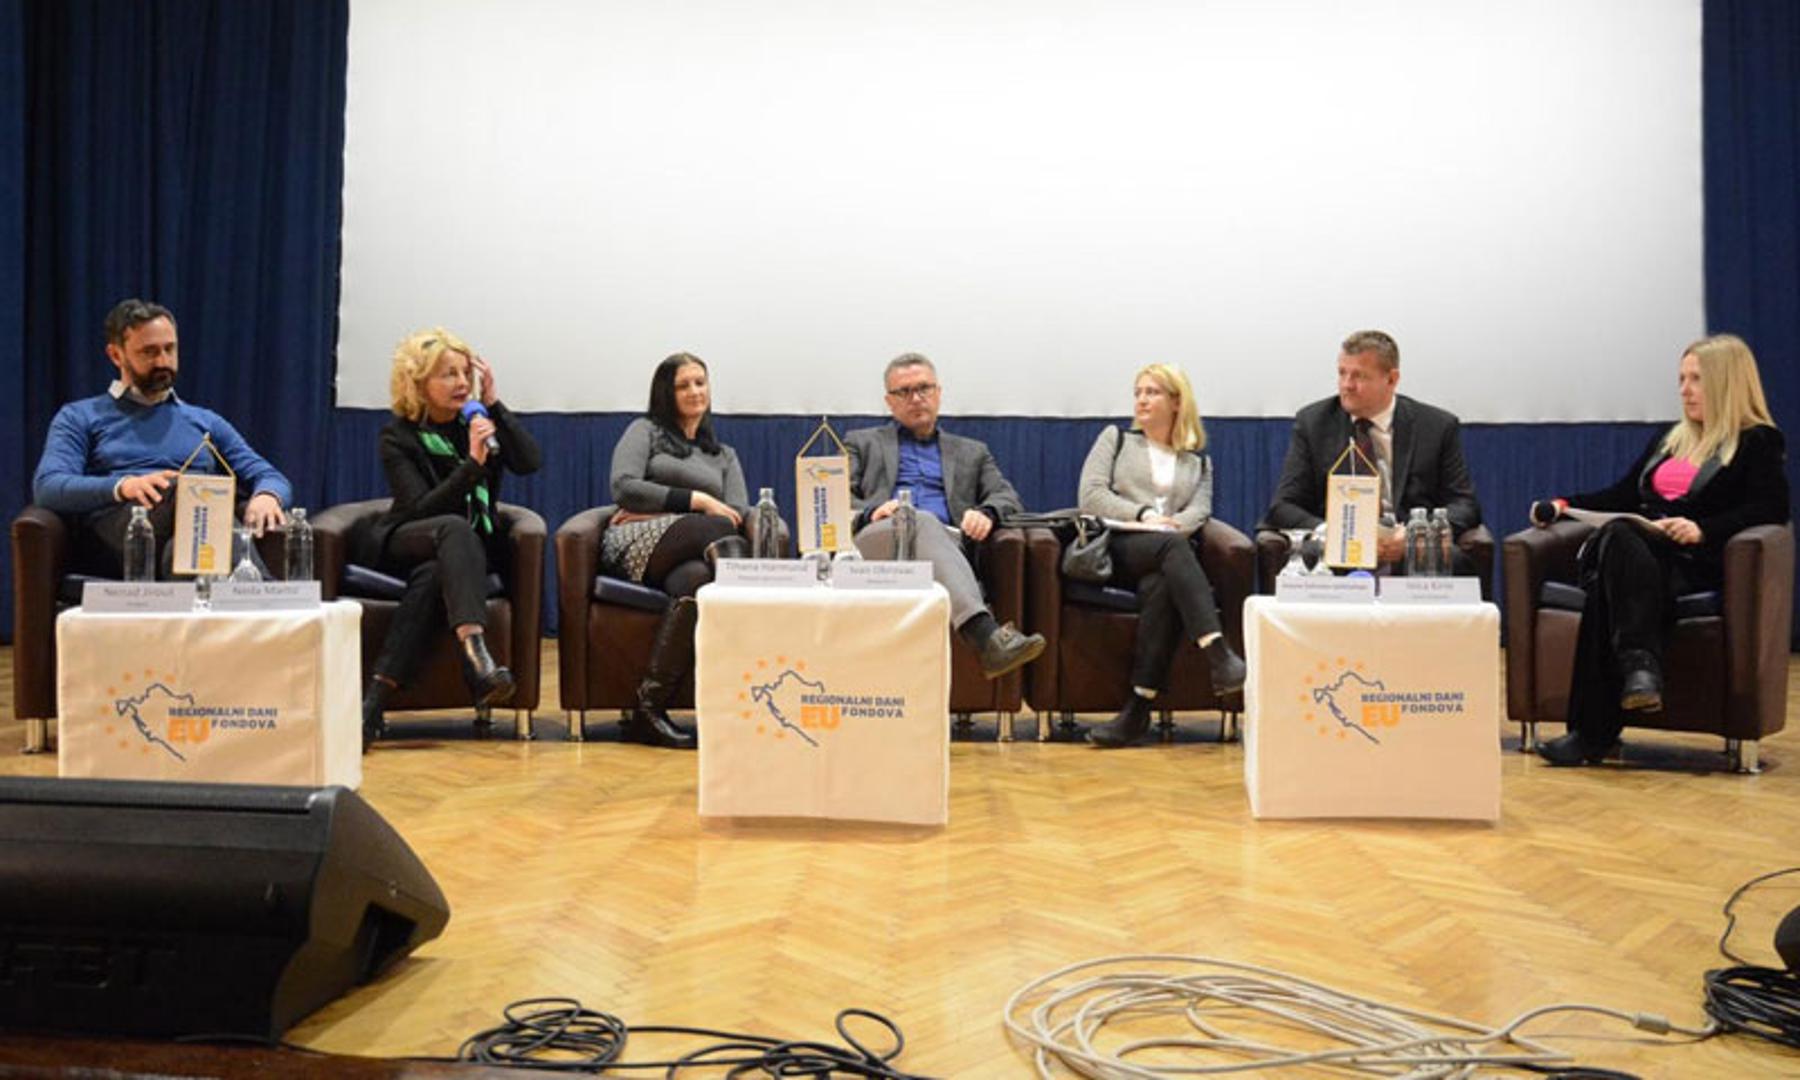 Sudionici panela: Nenad Jirouš, Polibox, Neda Martić, Tihana Harmund, Ivan Obrovac, Arijana Šafranko Salihćehajić, i Ivica Kirin, gradonačelnik Virovitice